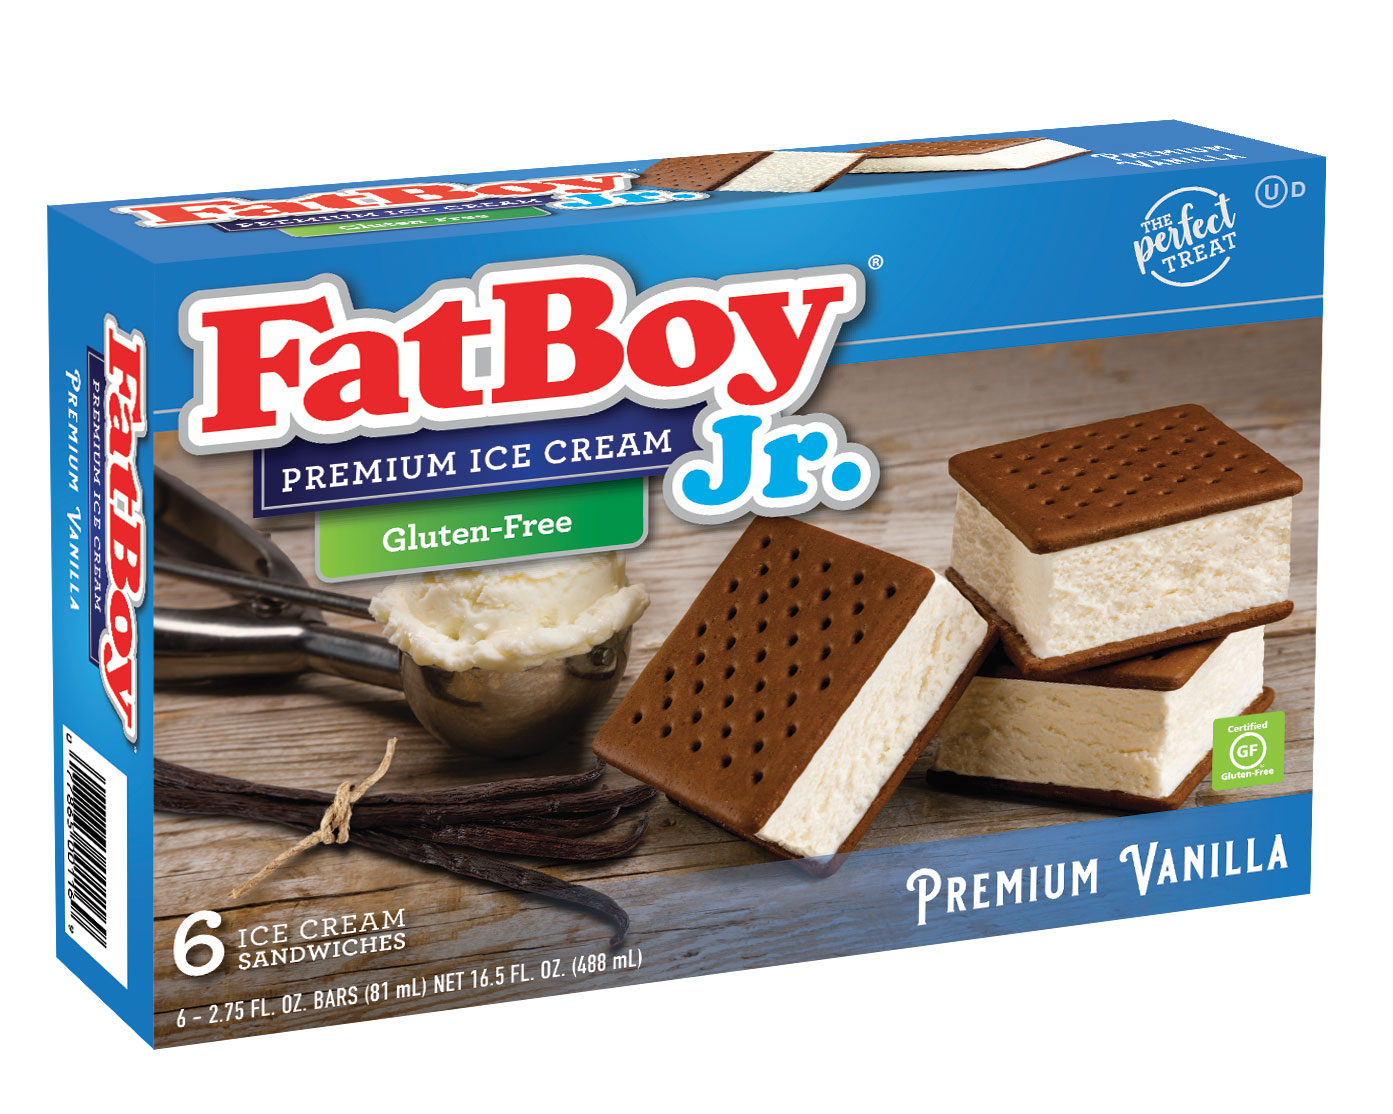 FatBoy® Gluten-Free Ice Cream Sandwich